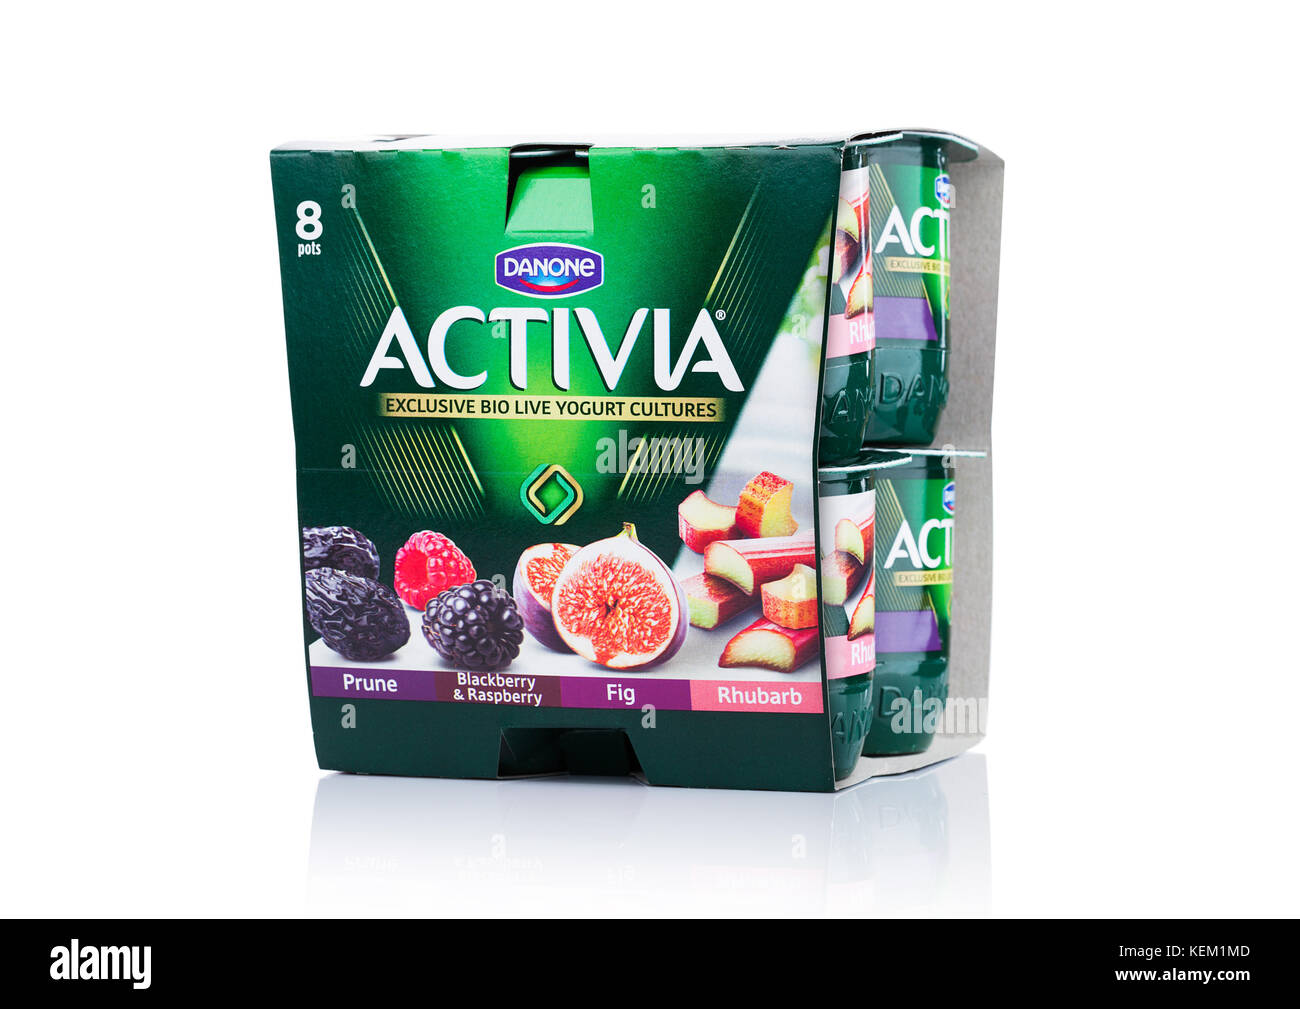 Londres, Royaume-Uni - 20 octobre 2017 : pack de yogourt Activia sur fond blanc. activia est une marque de yaourts administré par le groupe Danone. Banque D'Images